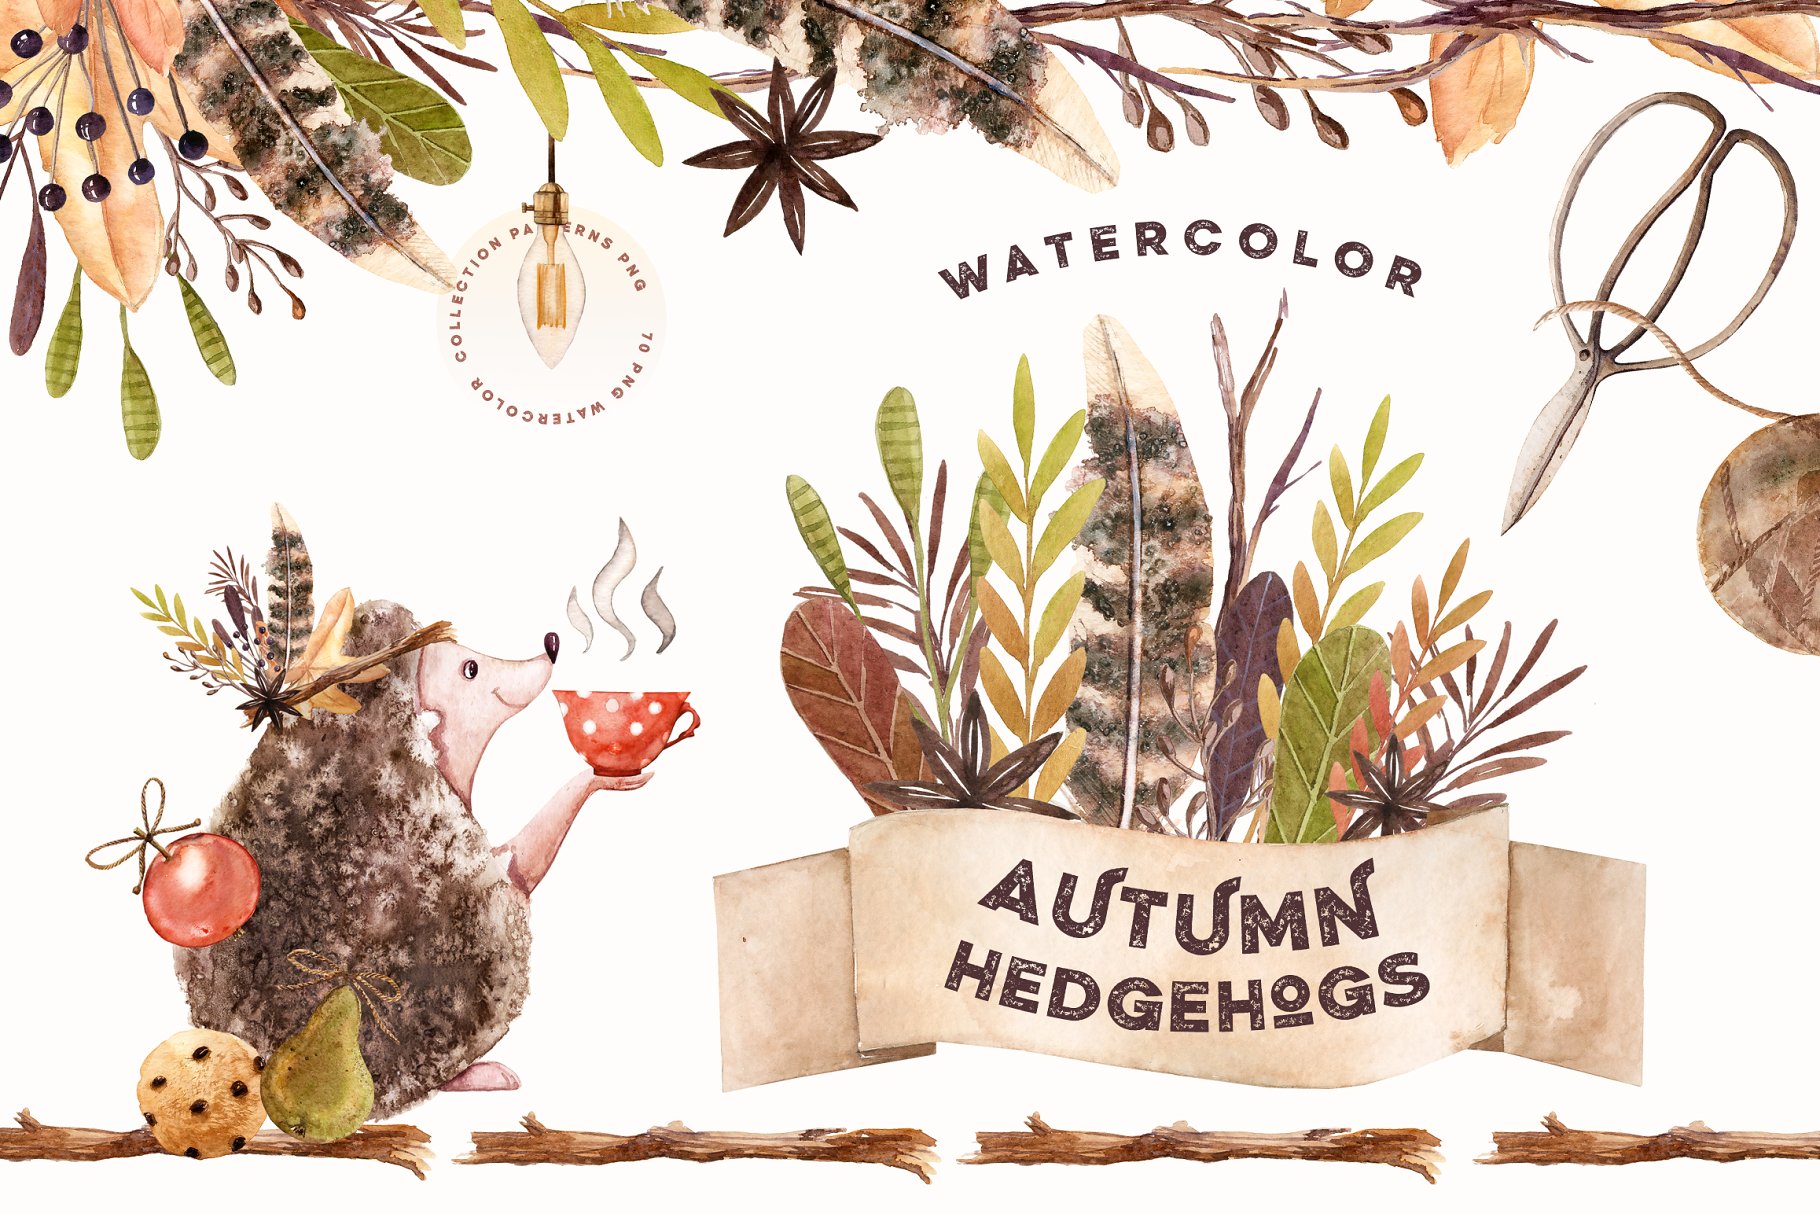 刺猬与秋天水彩素材集 Watercolor Autumn Hedgehogs插图